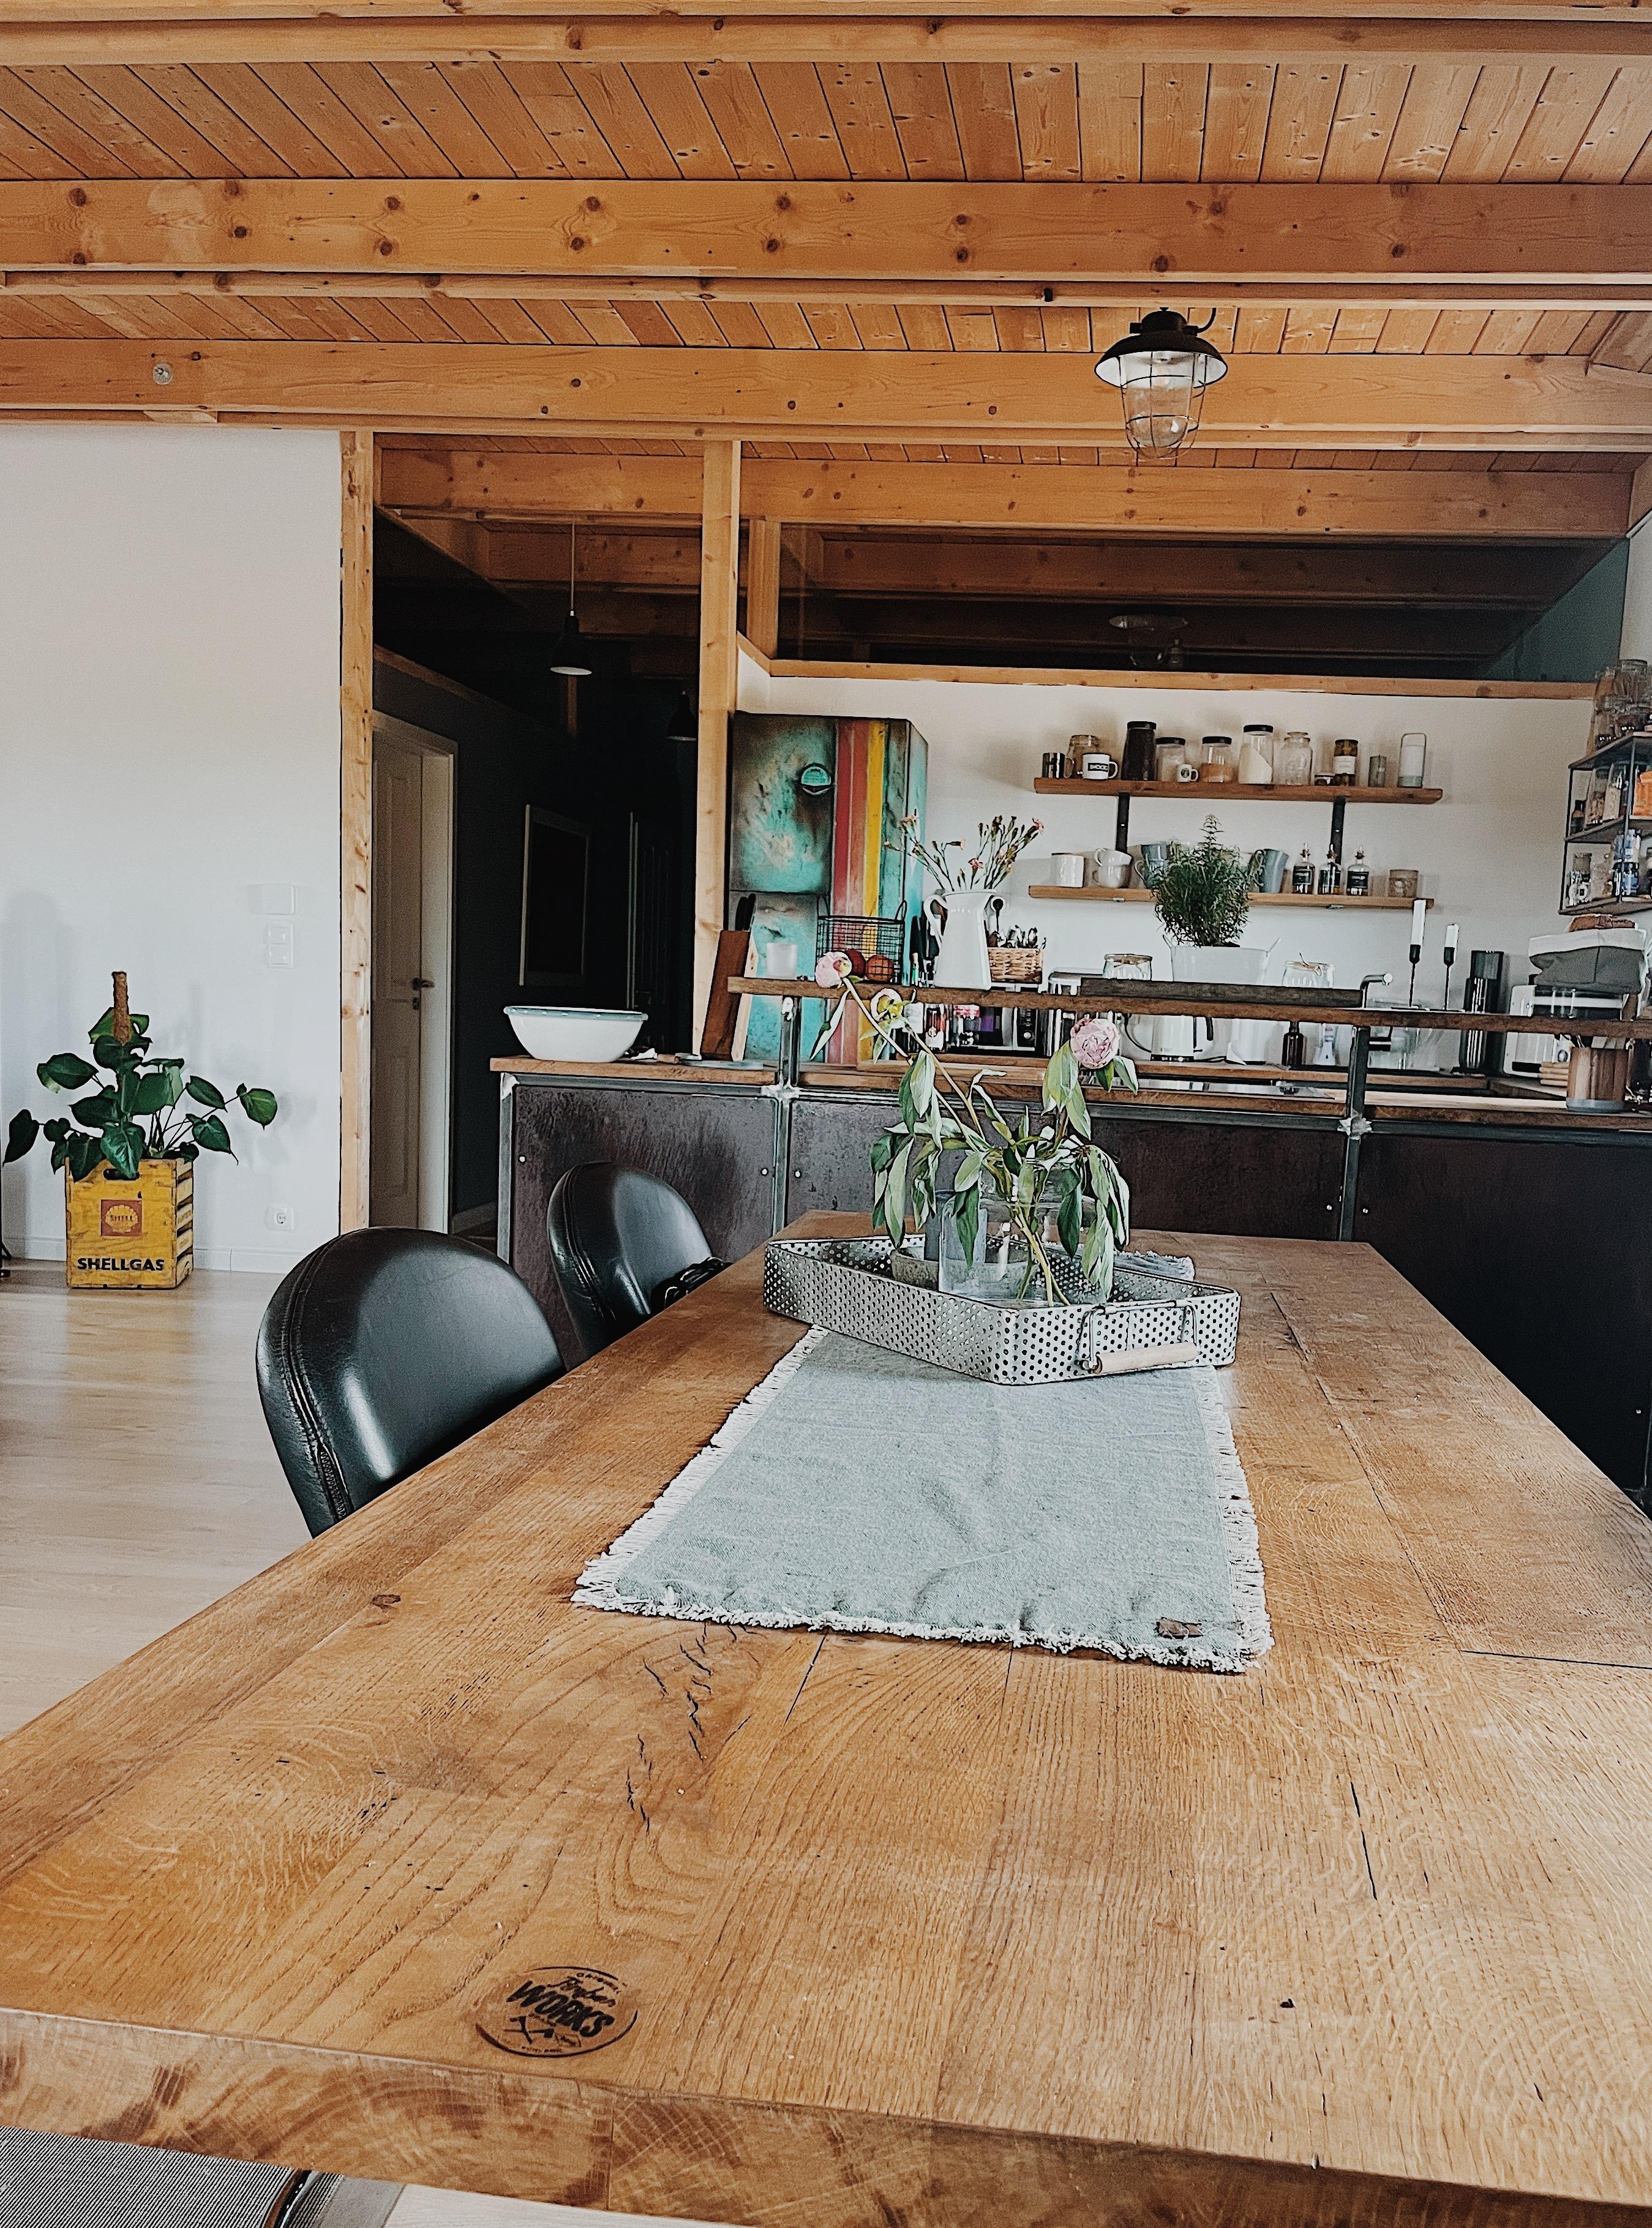 Take a seat 🤍

#wohnzimmer #diningtable #kitchen #teakholz #handmade